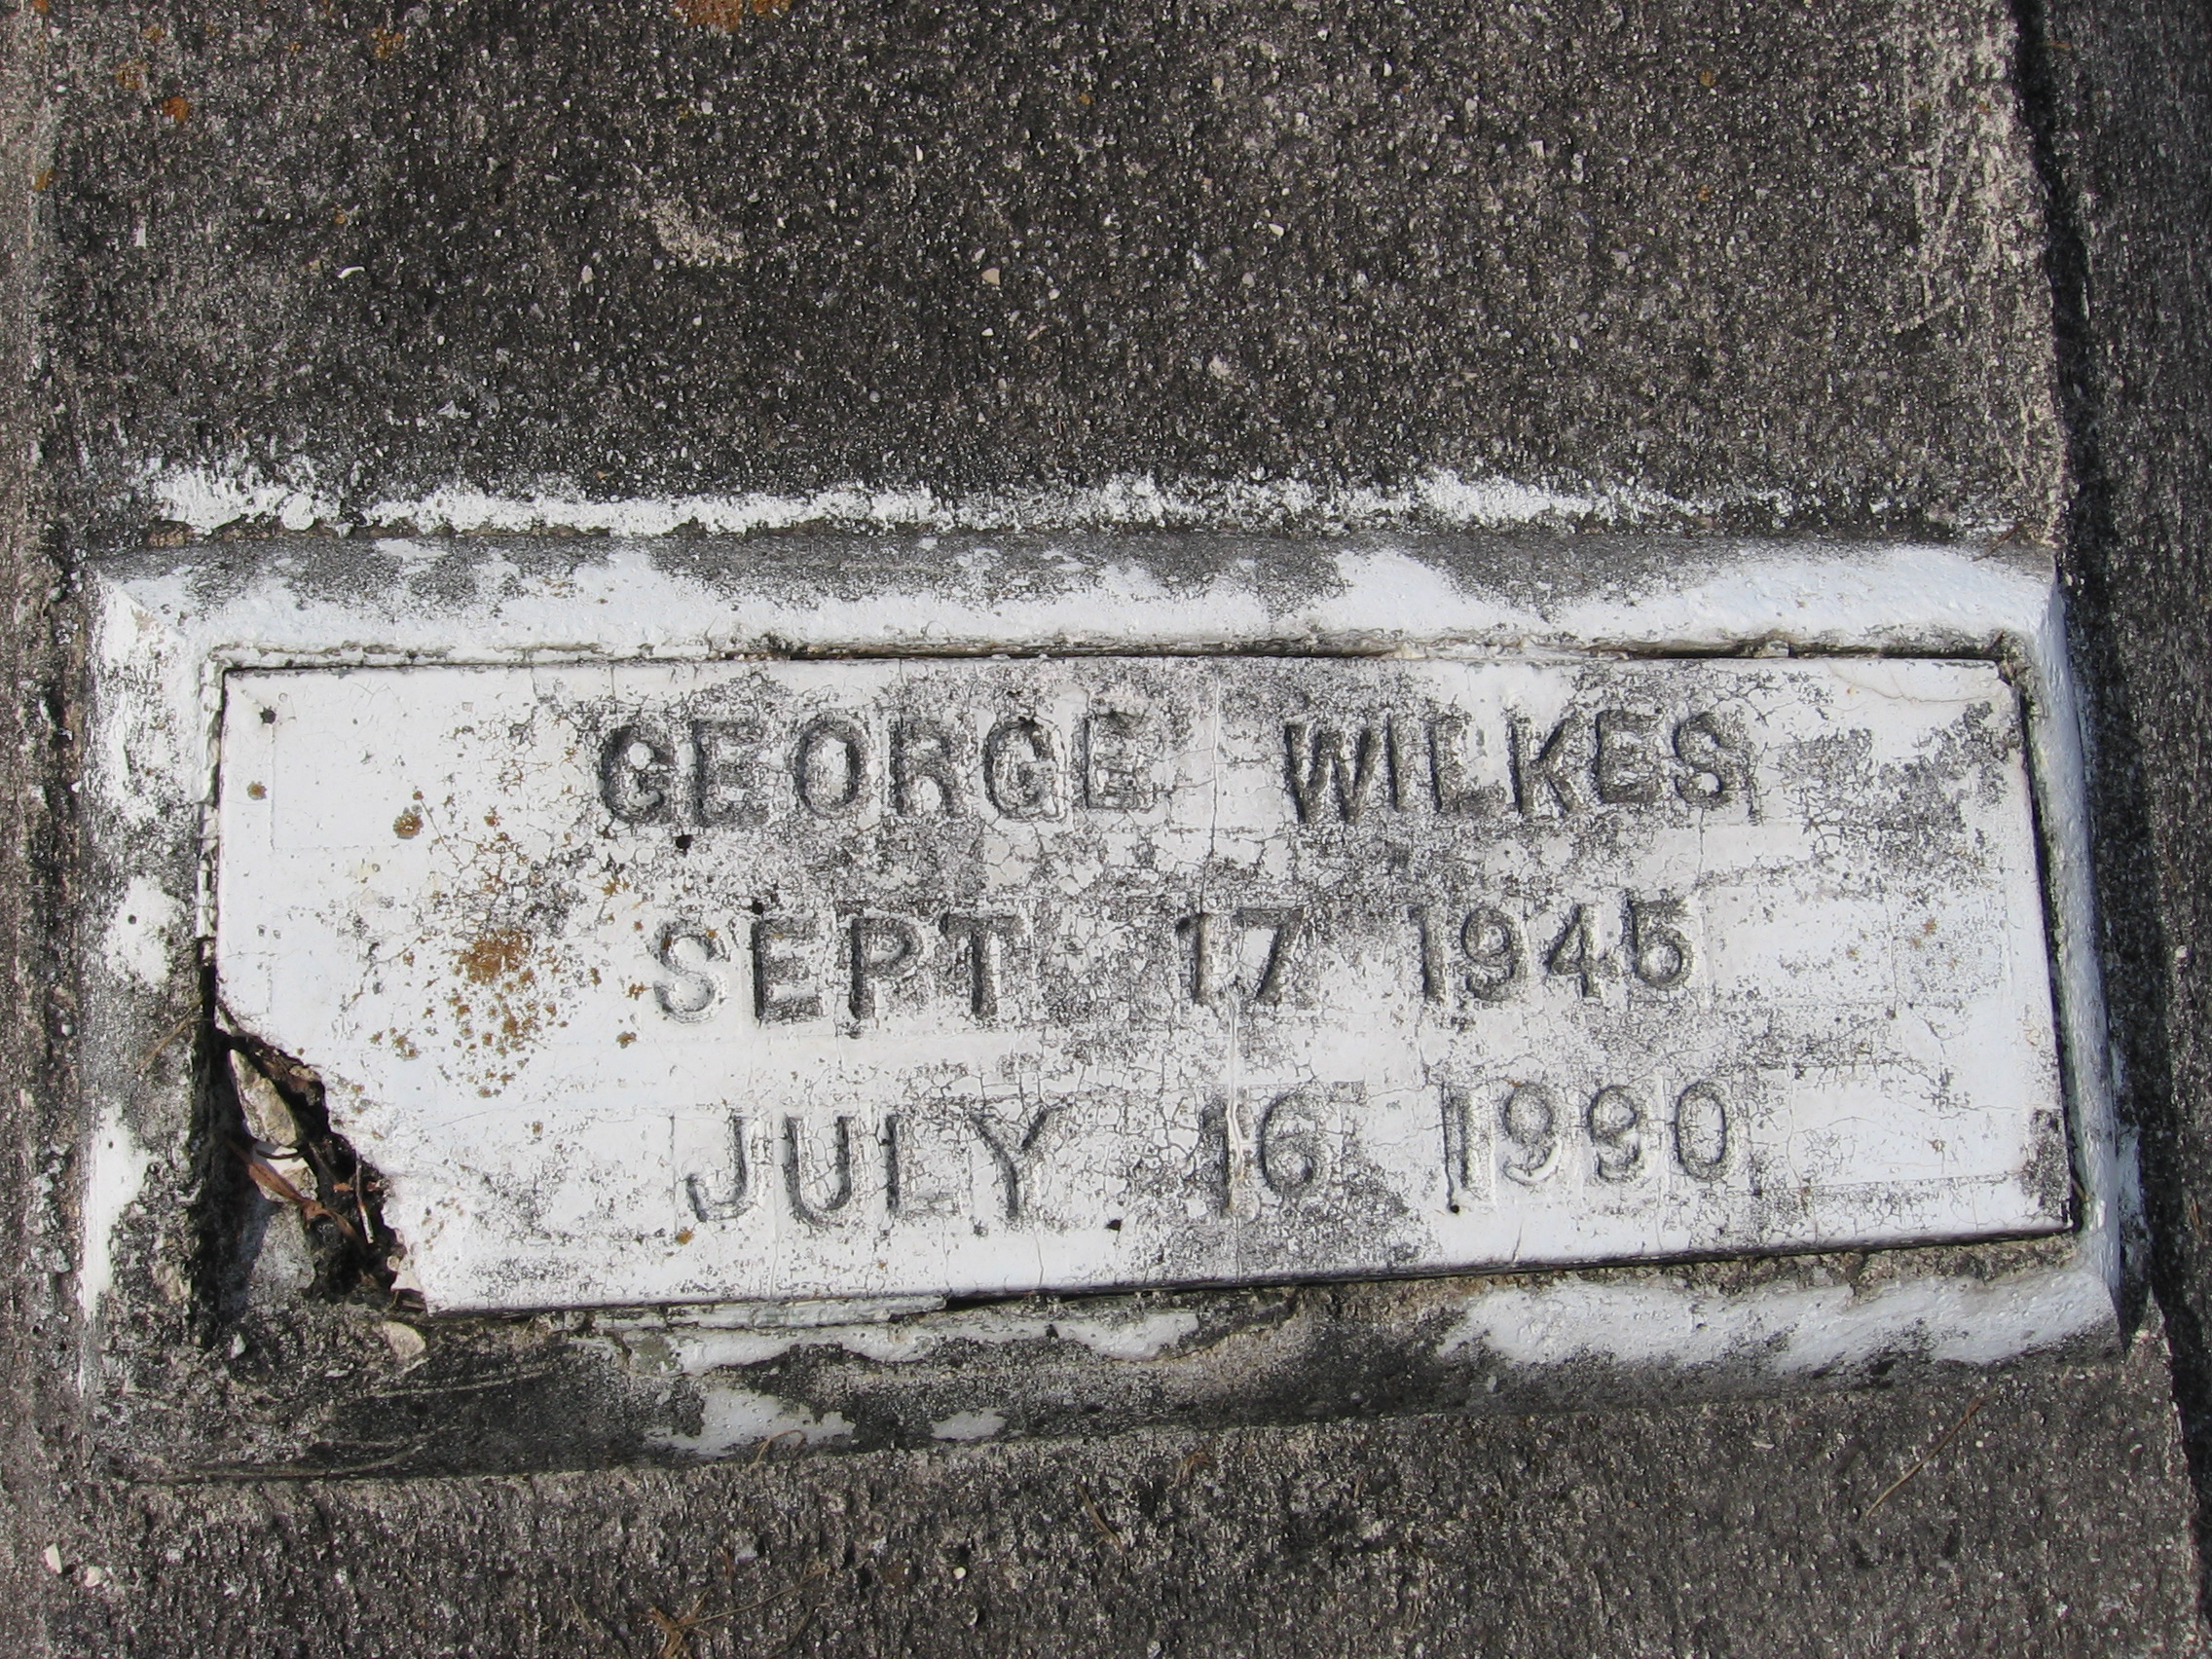 George Wilkes